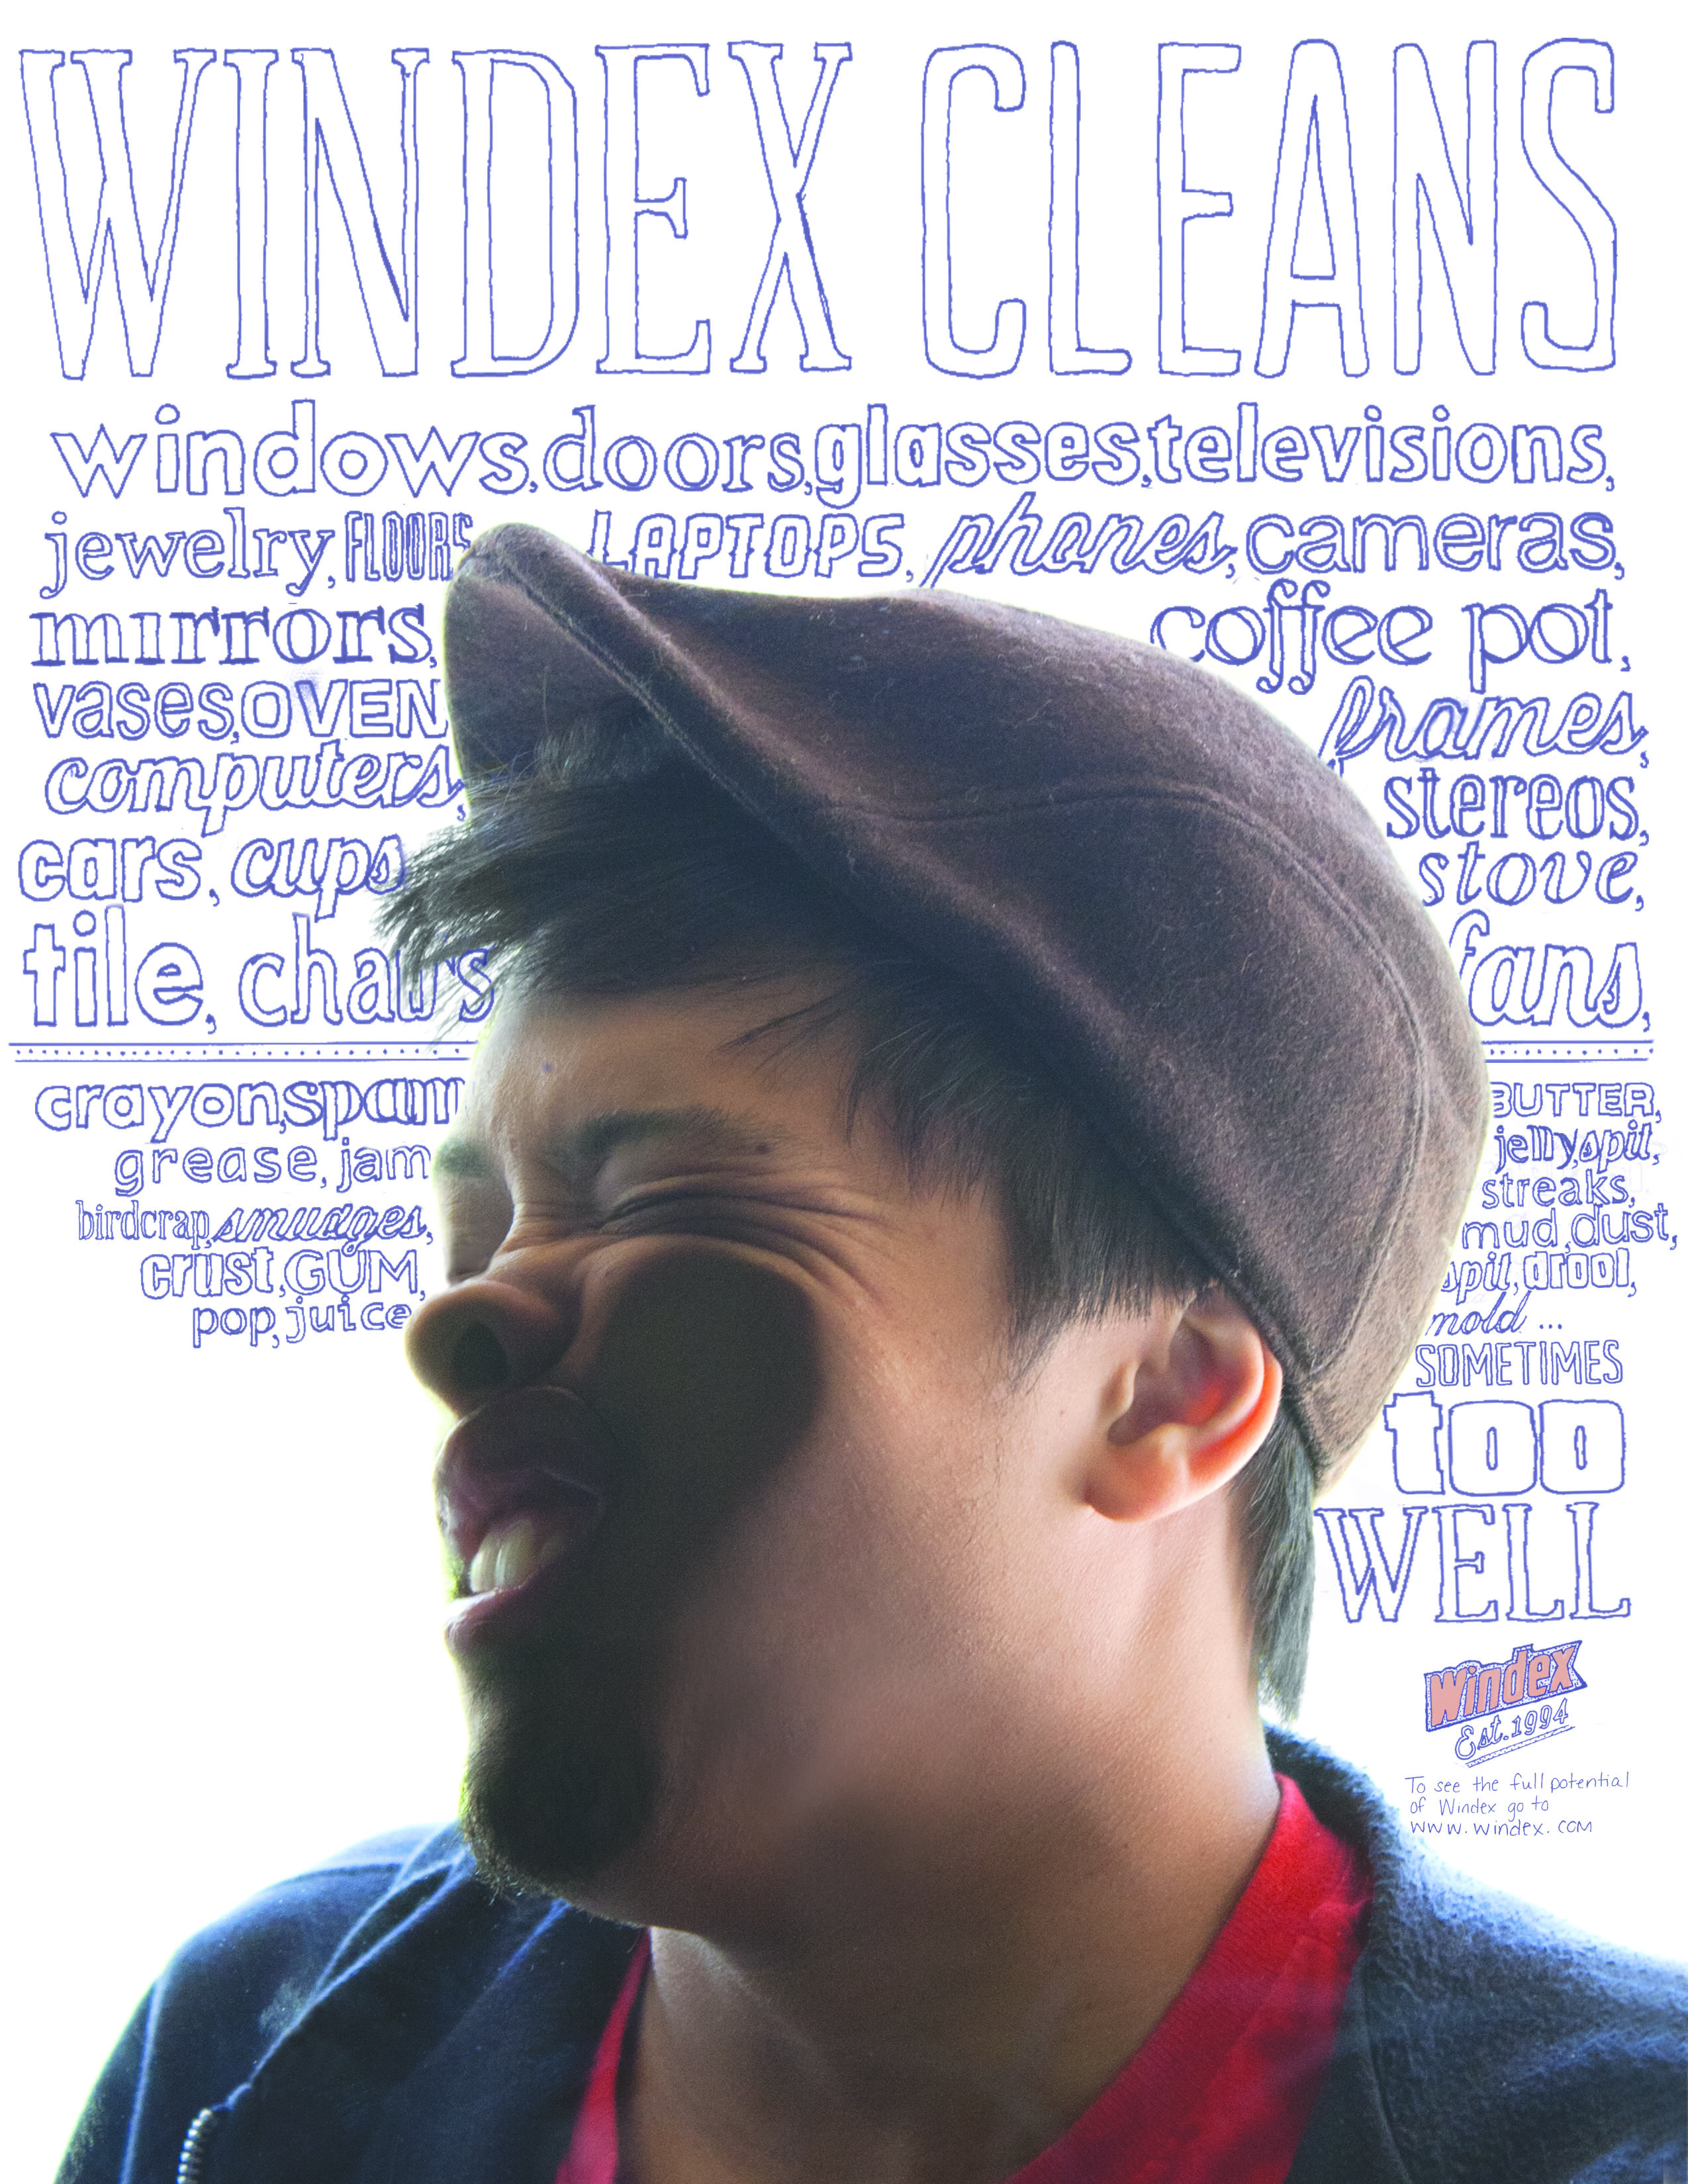 Windex ad